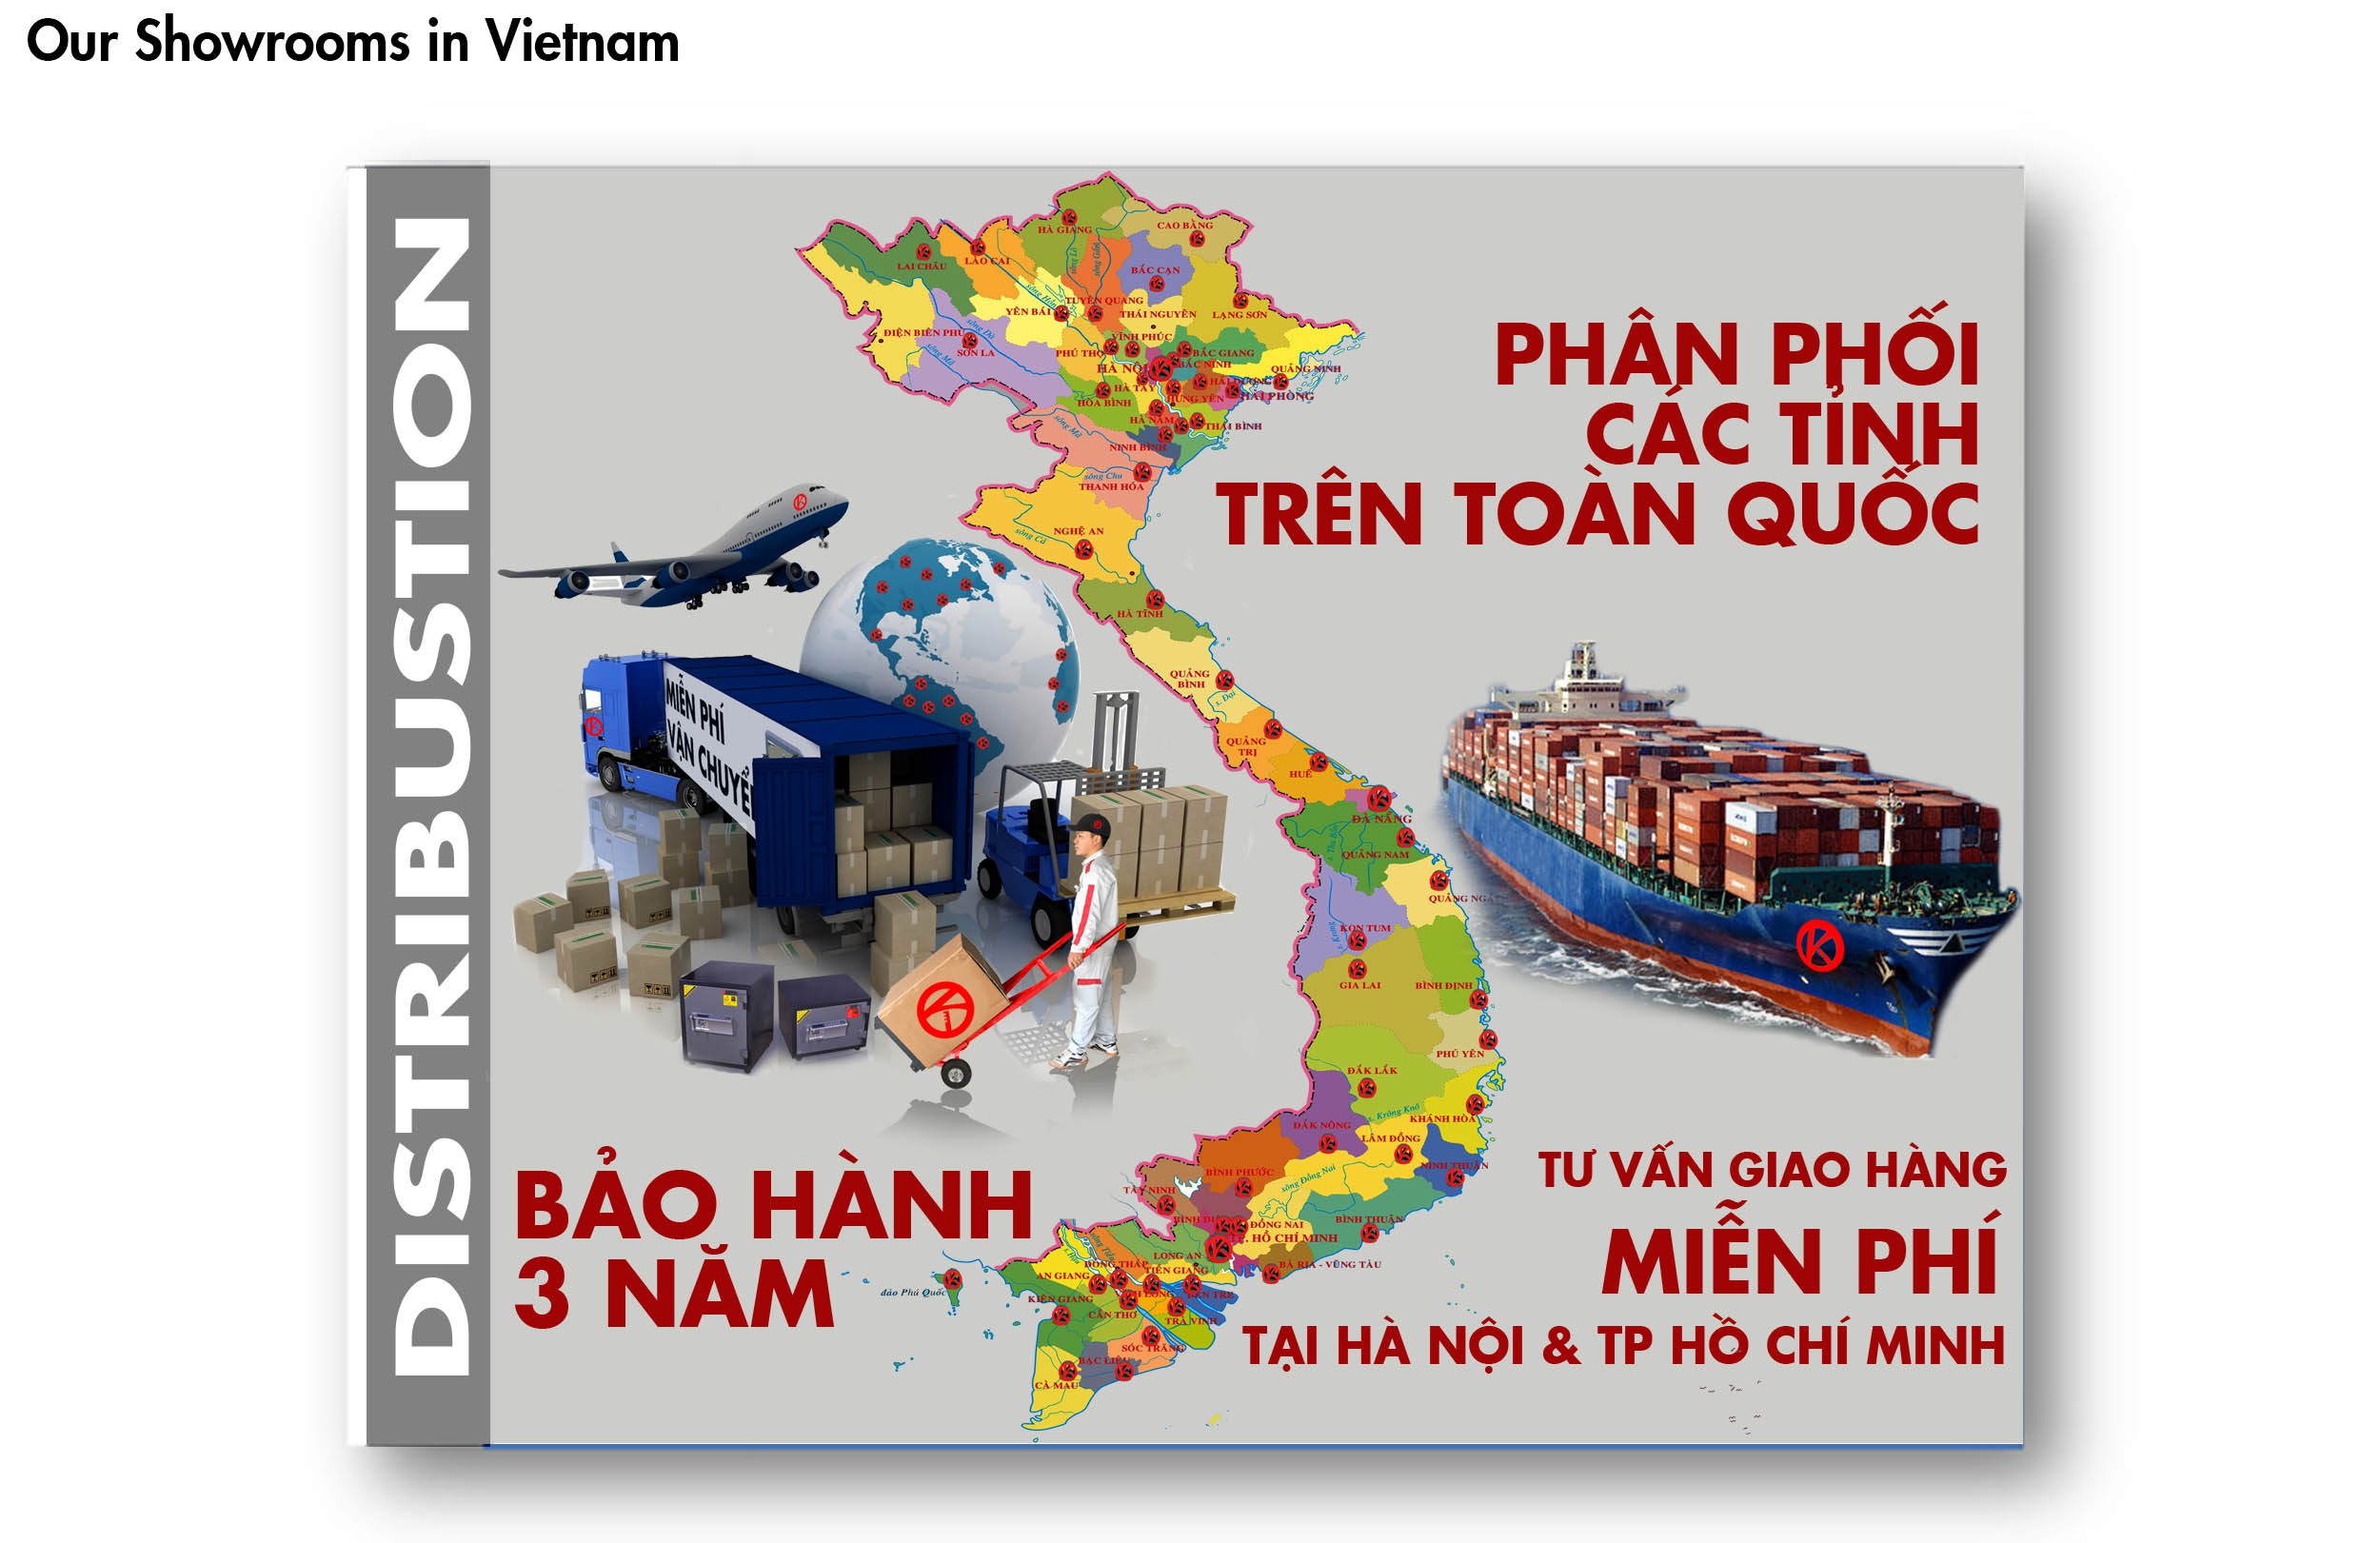 Két Sắt Việt Nam Cao Cấp Chất Lượng Số 1 VN